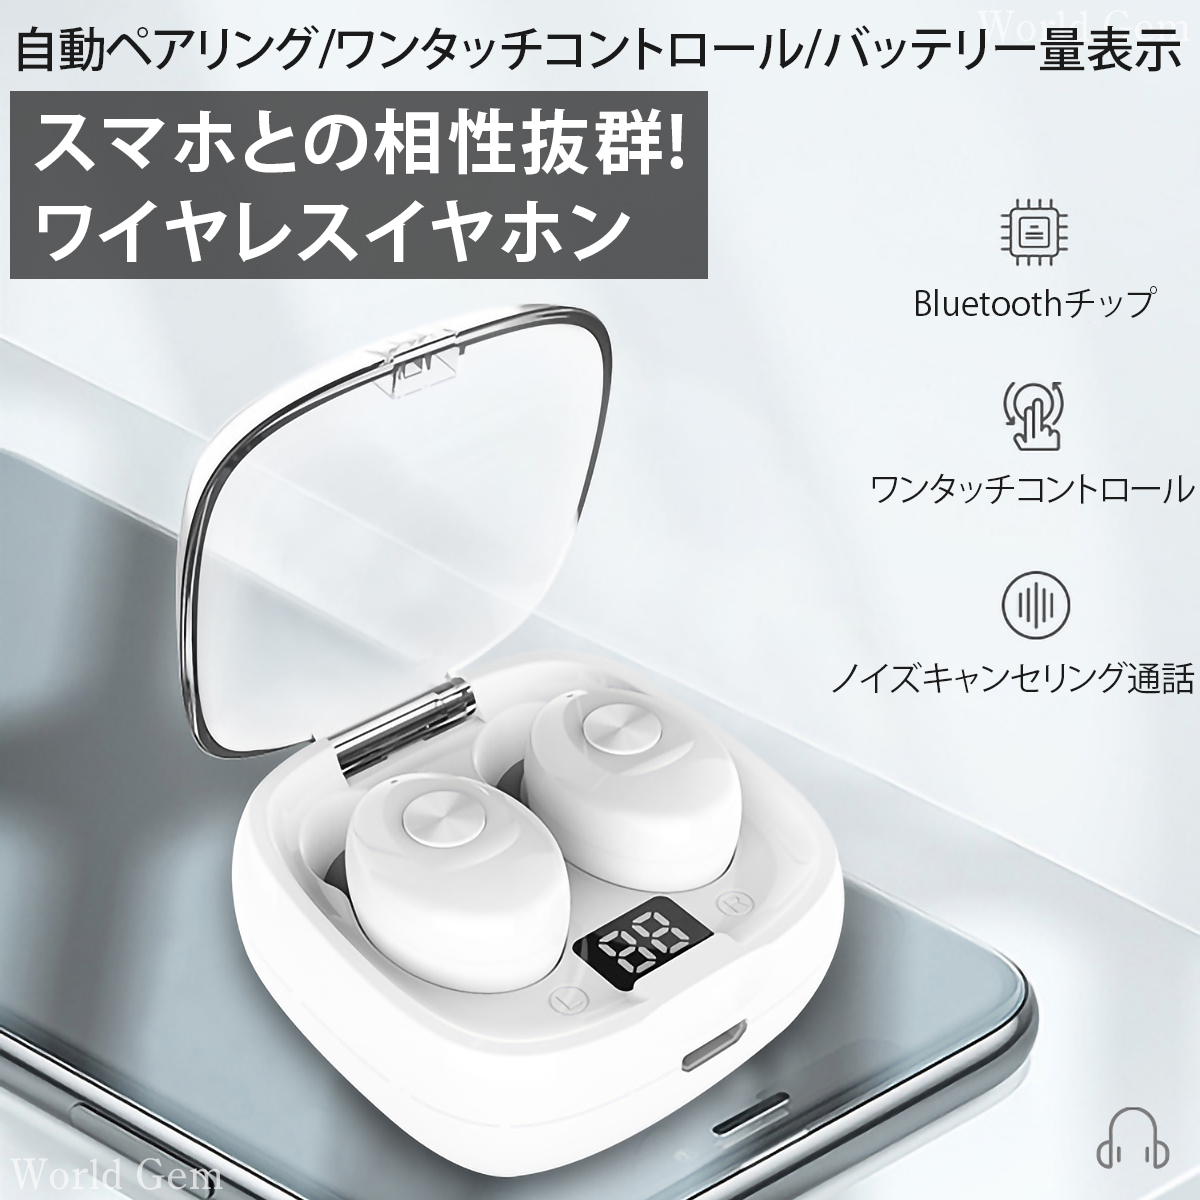 ワイヤレスイヤホン ブルートゥースイヤホン Bluetooth 5.0 高音質 軽量 防水 ヘッドセット ハンズフリー Bluetoothイヤホン  送料無料 iPhone スポーツ 子ども xg8 無線イヤホン ノイズキャンセル ノイズキャンセリング カナルタイプ ソフトシリコン コンパクト 